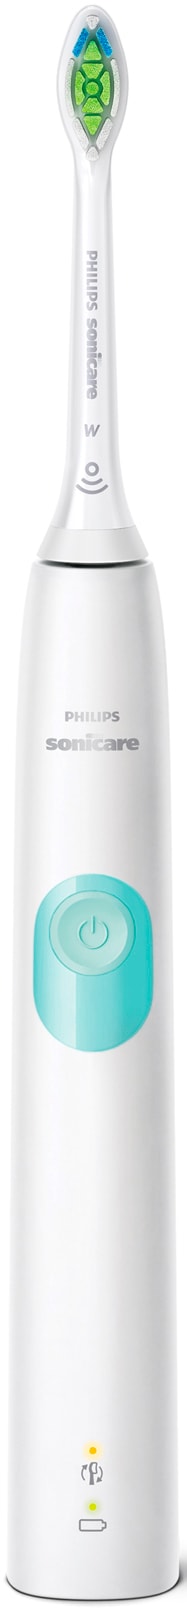 Philips Sonicare Elektrische Zahnbürste »ProtectiveClean 4300 HX6807/28«, 1 St. Aufsteckbürsten, mit Schalltechnologie und BrushSync Funktion, Ladestation, Reiseetui